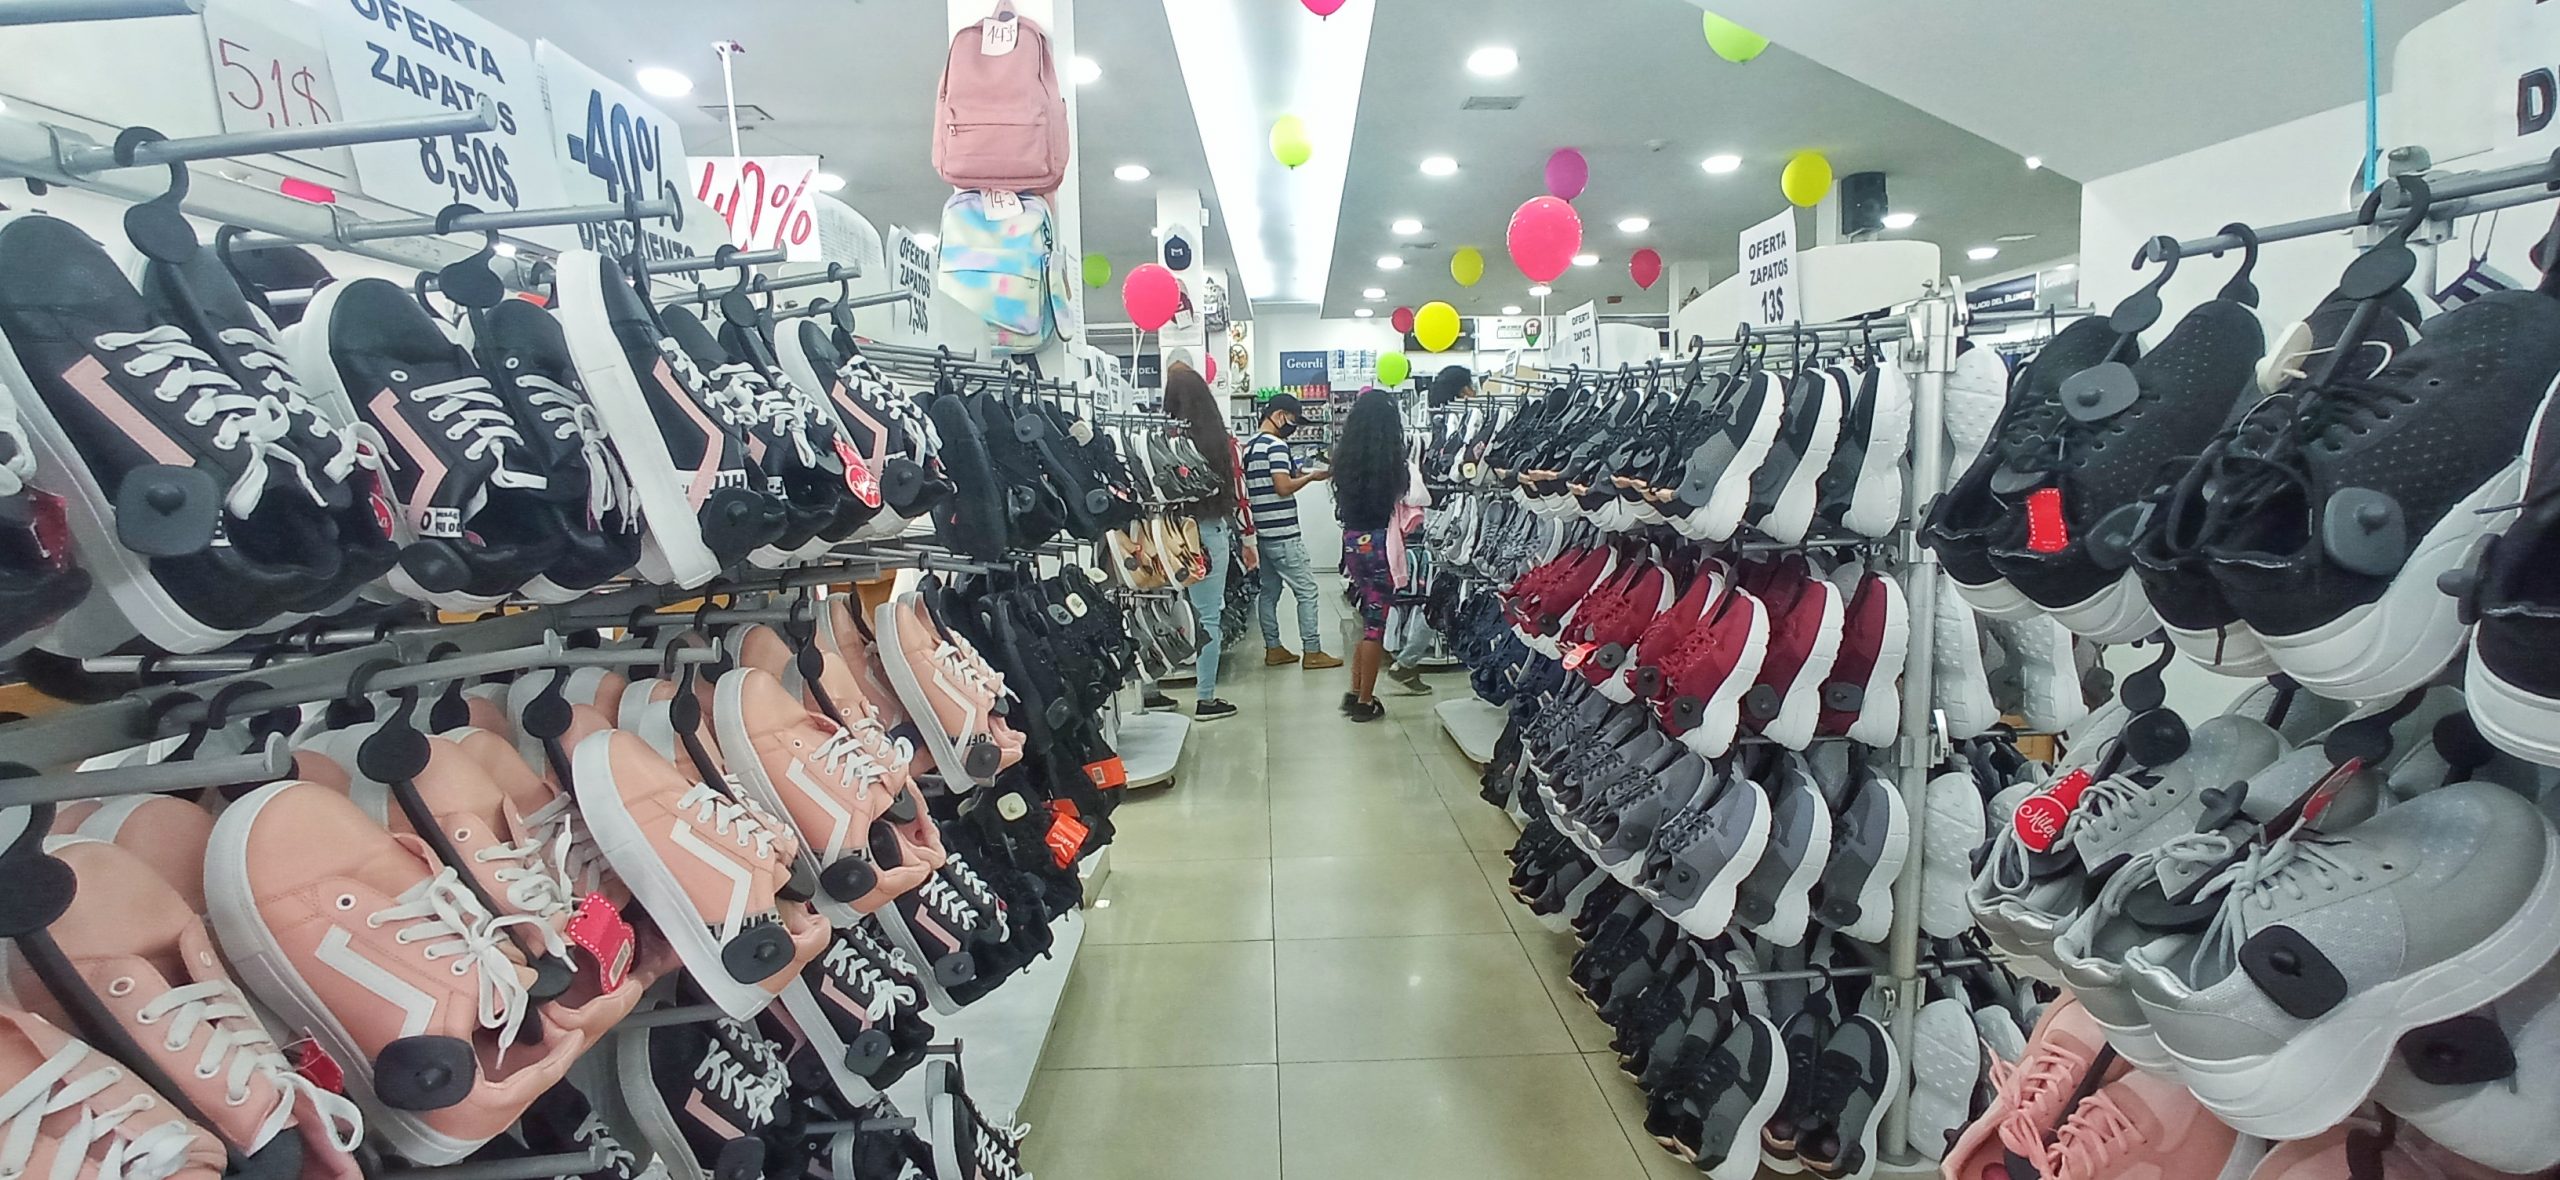 Tiendas realizan descuentos con el objetivo de atraer clientes - Diario  Avance